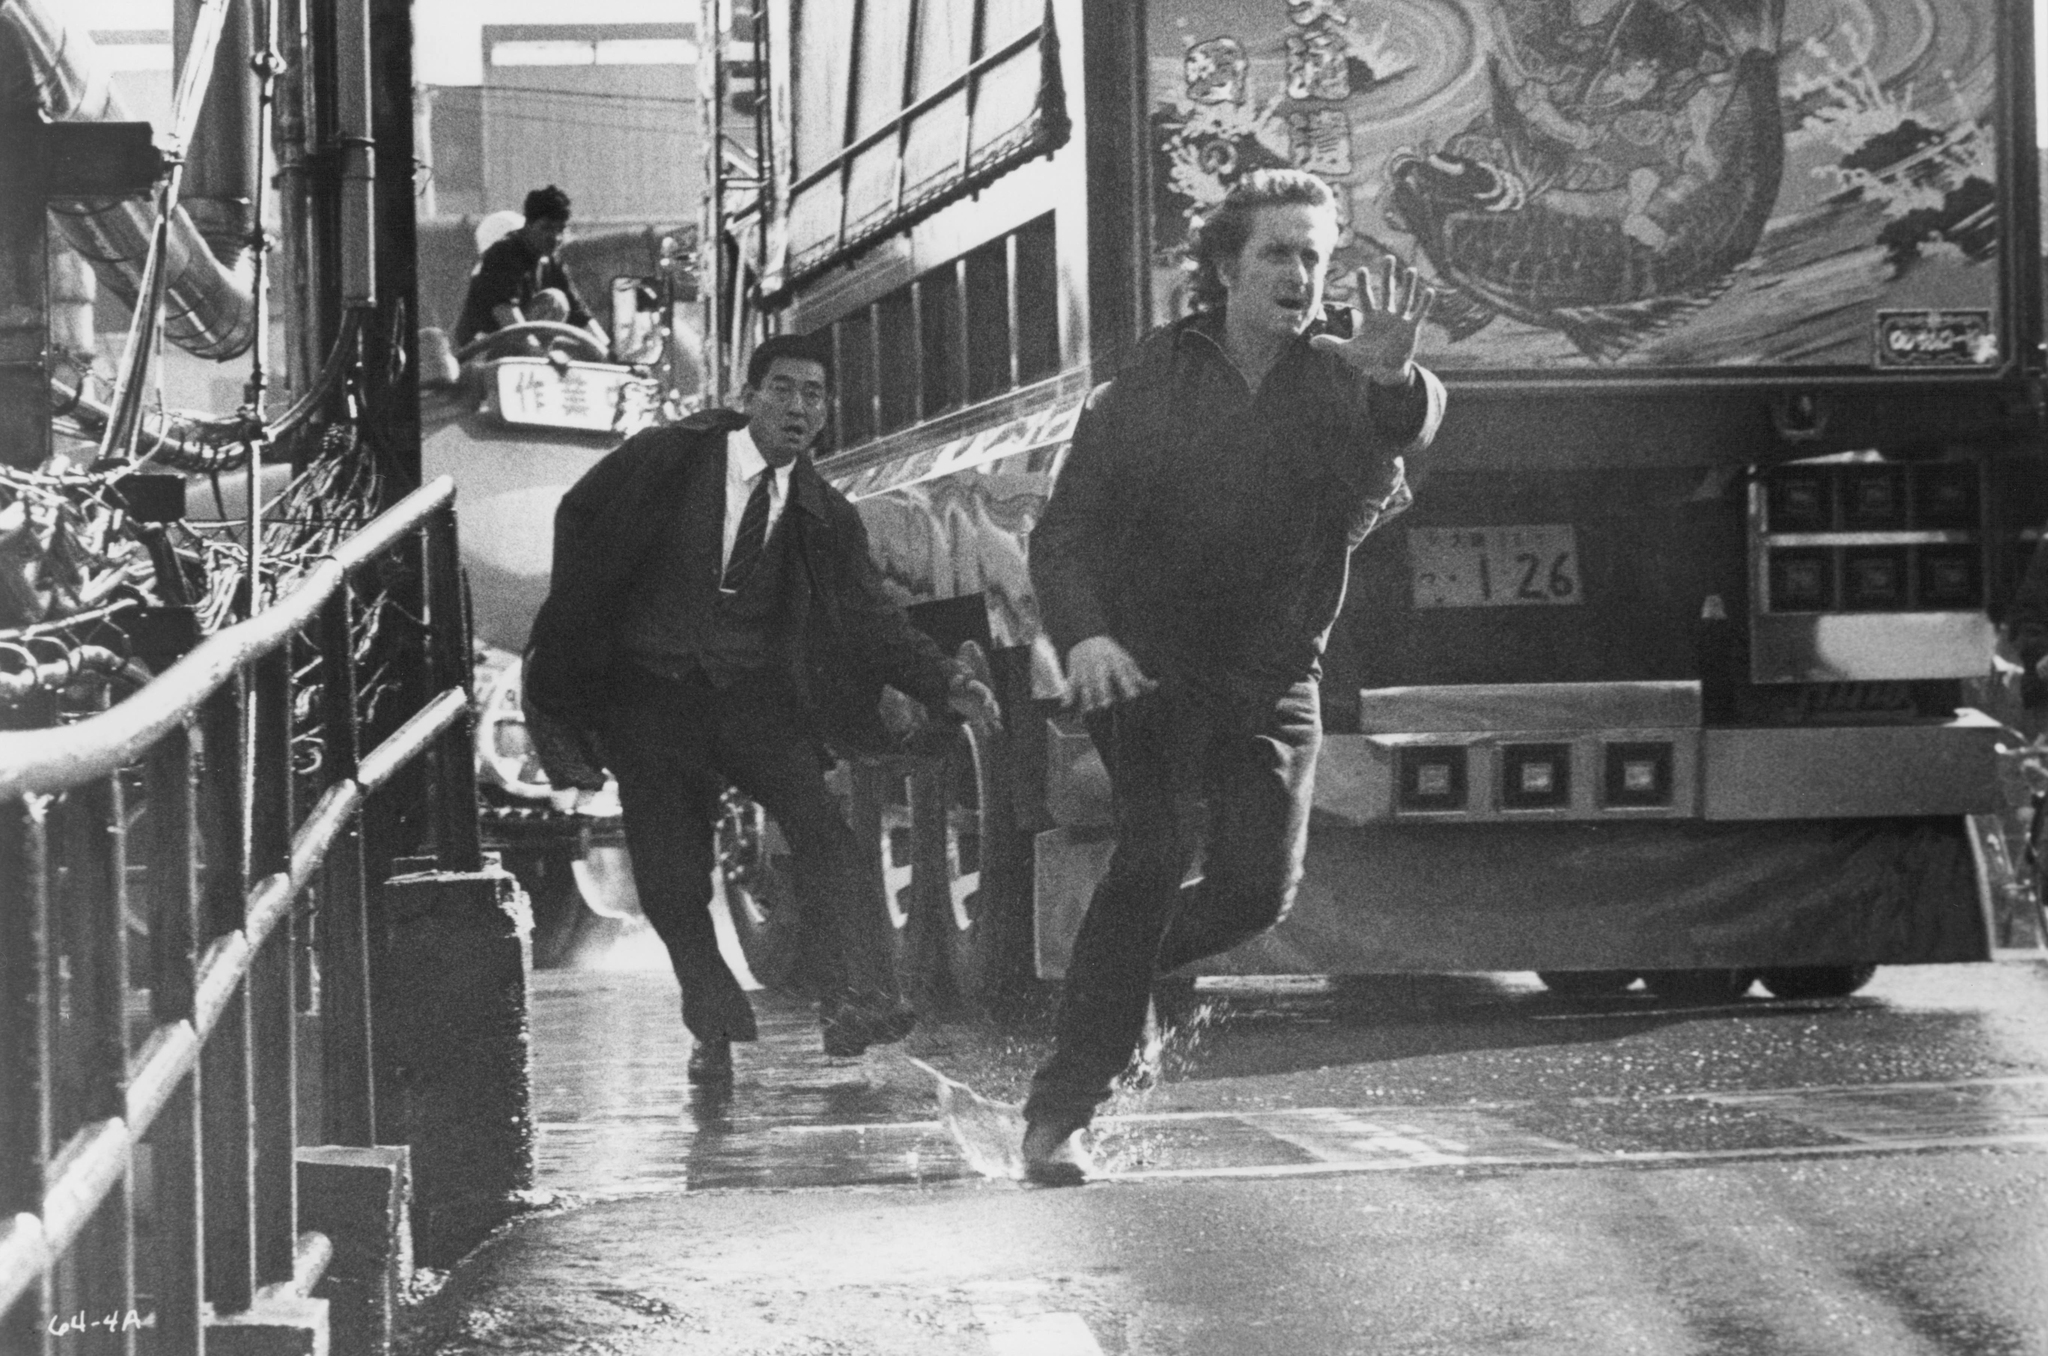 Still of Michael Douglas and Ken Takakura in Black Rain (1989)